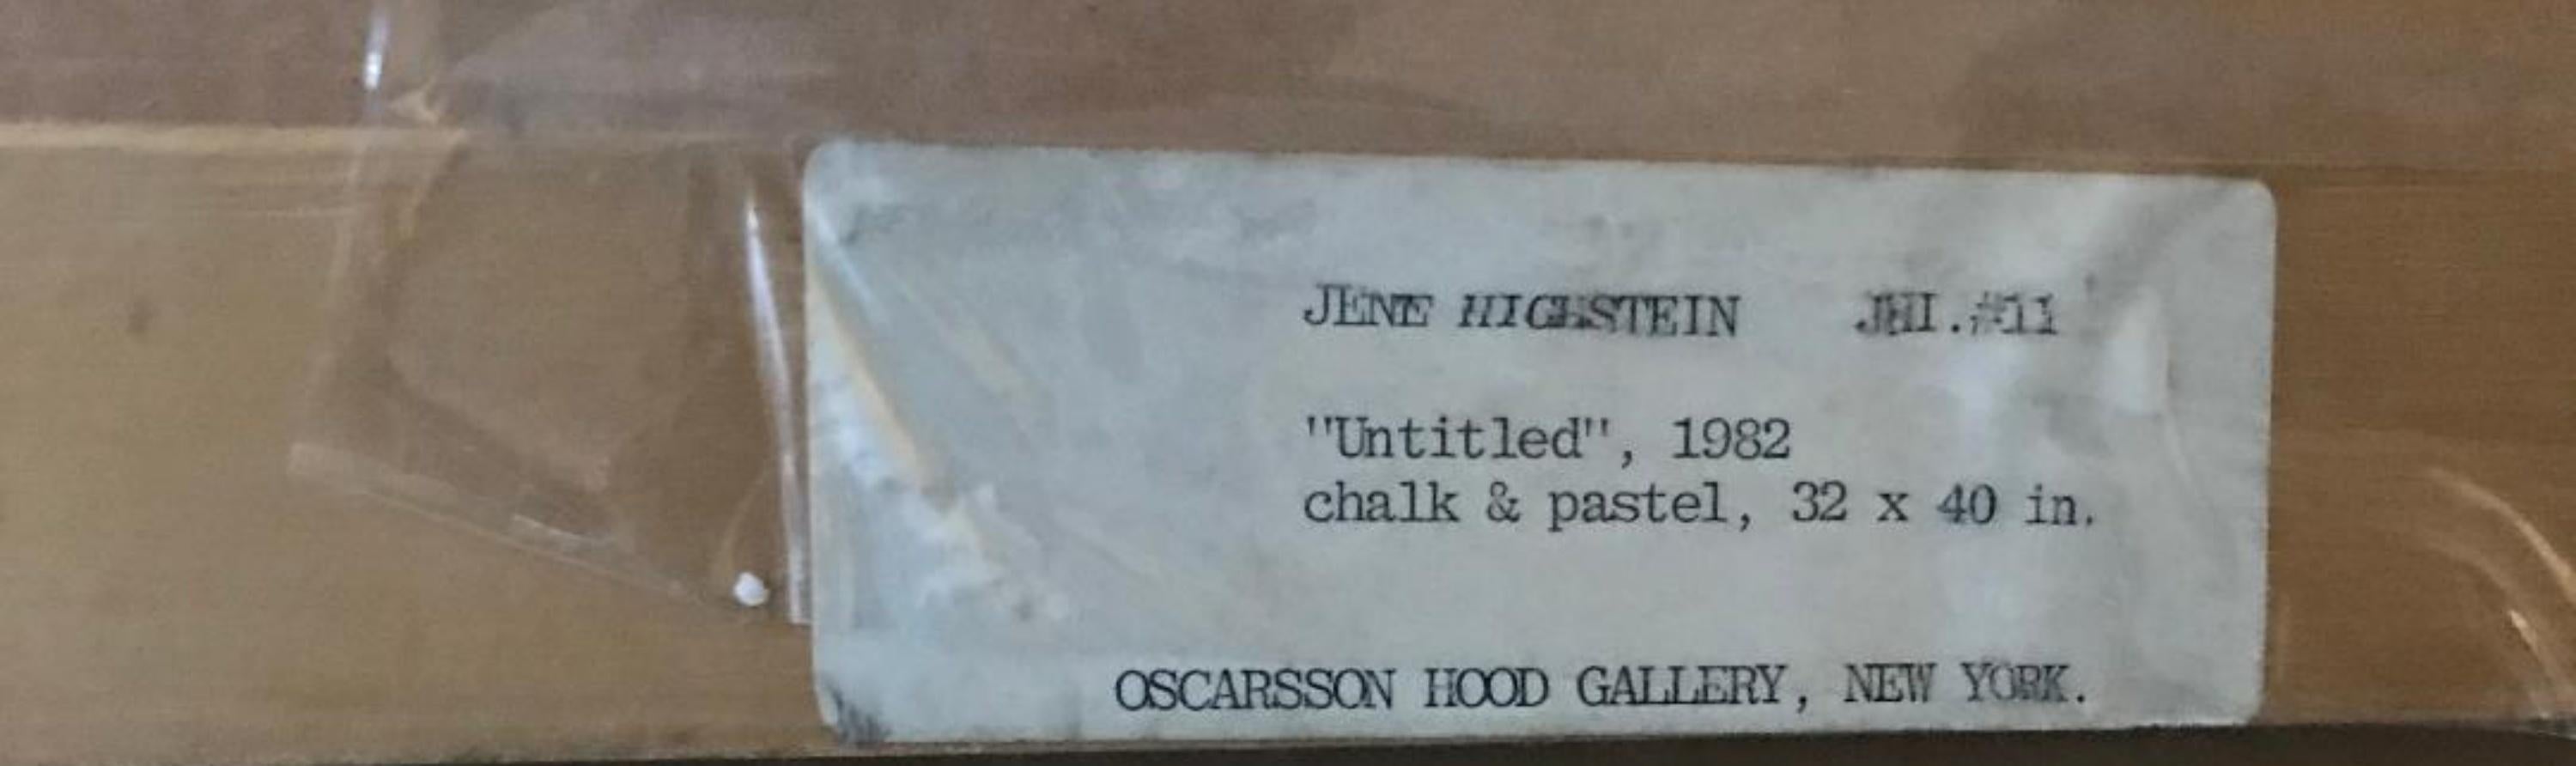 Jene Highstein
Sin título, 1982
Pastel y tiza sobre papel
Firmado a mano y fechado por el artista en el anverso
32 × 40 pulgadas
Marco incluido
Dibujo original al pastel y a la tiza, firmado a mano, con ricos colores deslumbrantes en marco original